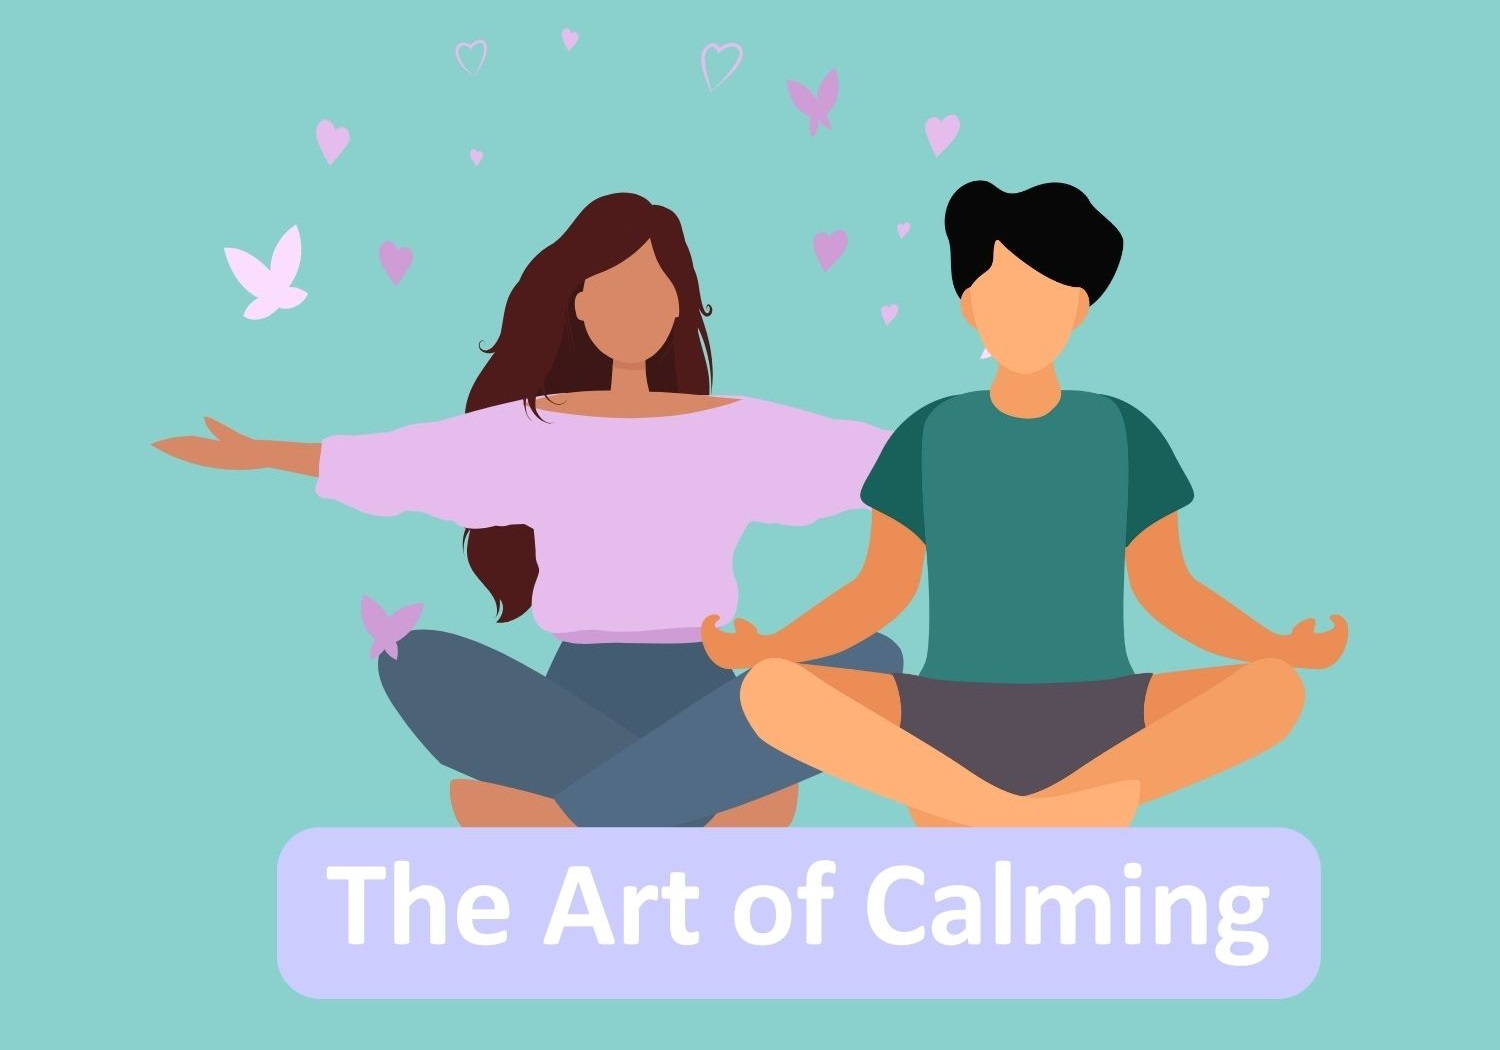 The Art of Calming